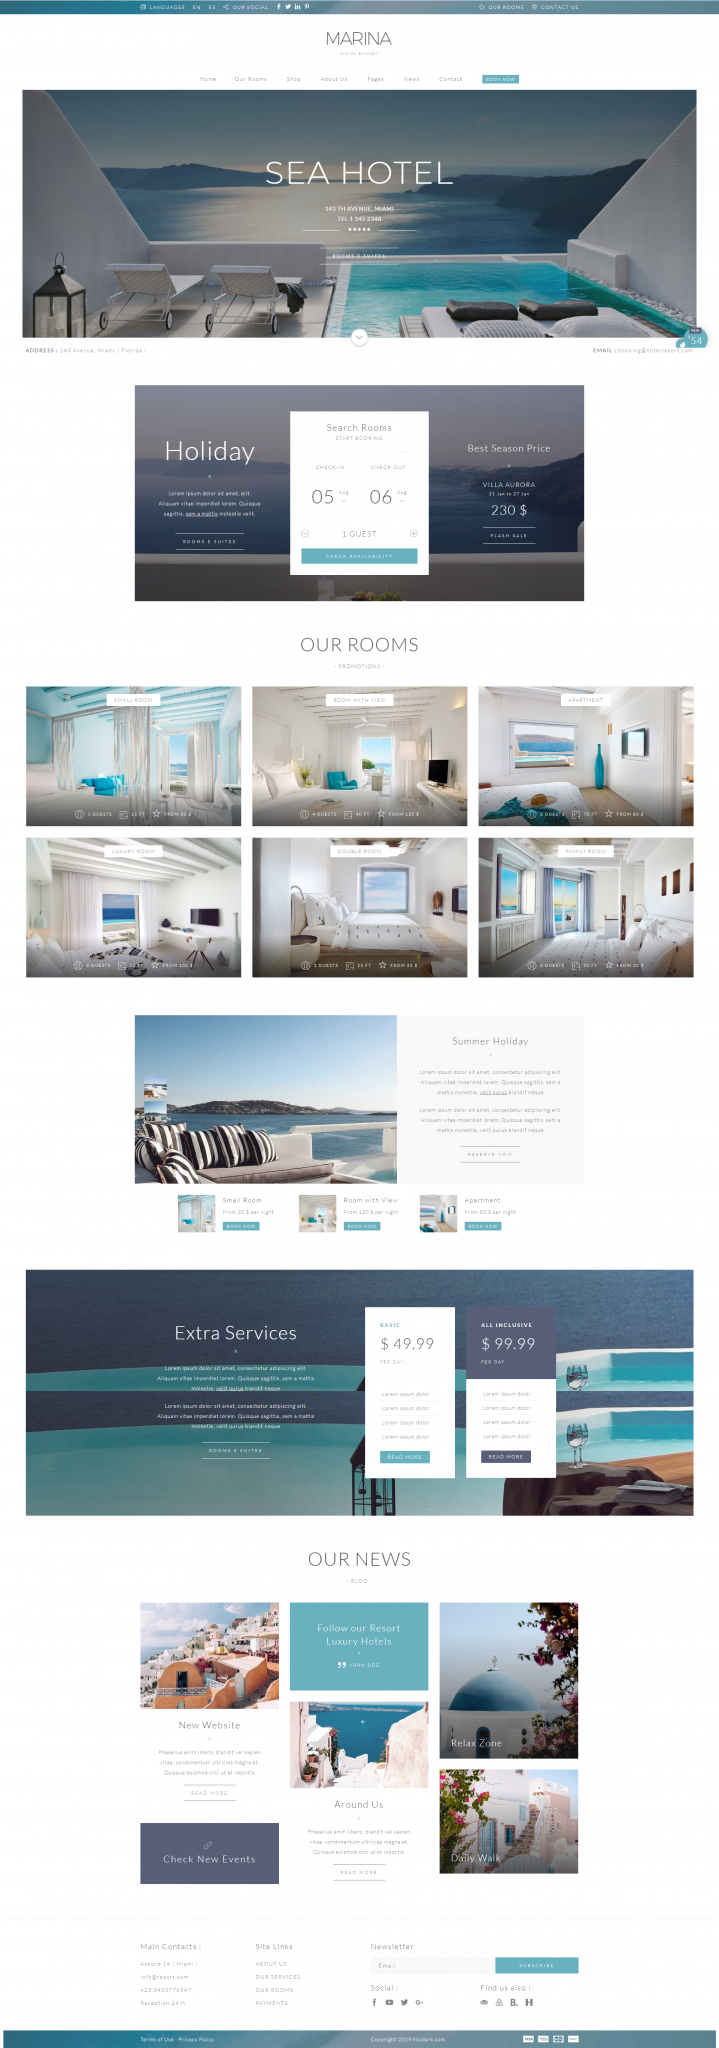 Mẫu web nhà hàng khách sạn Marina